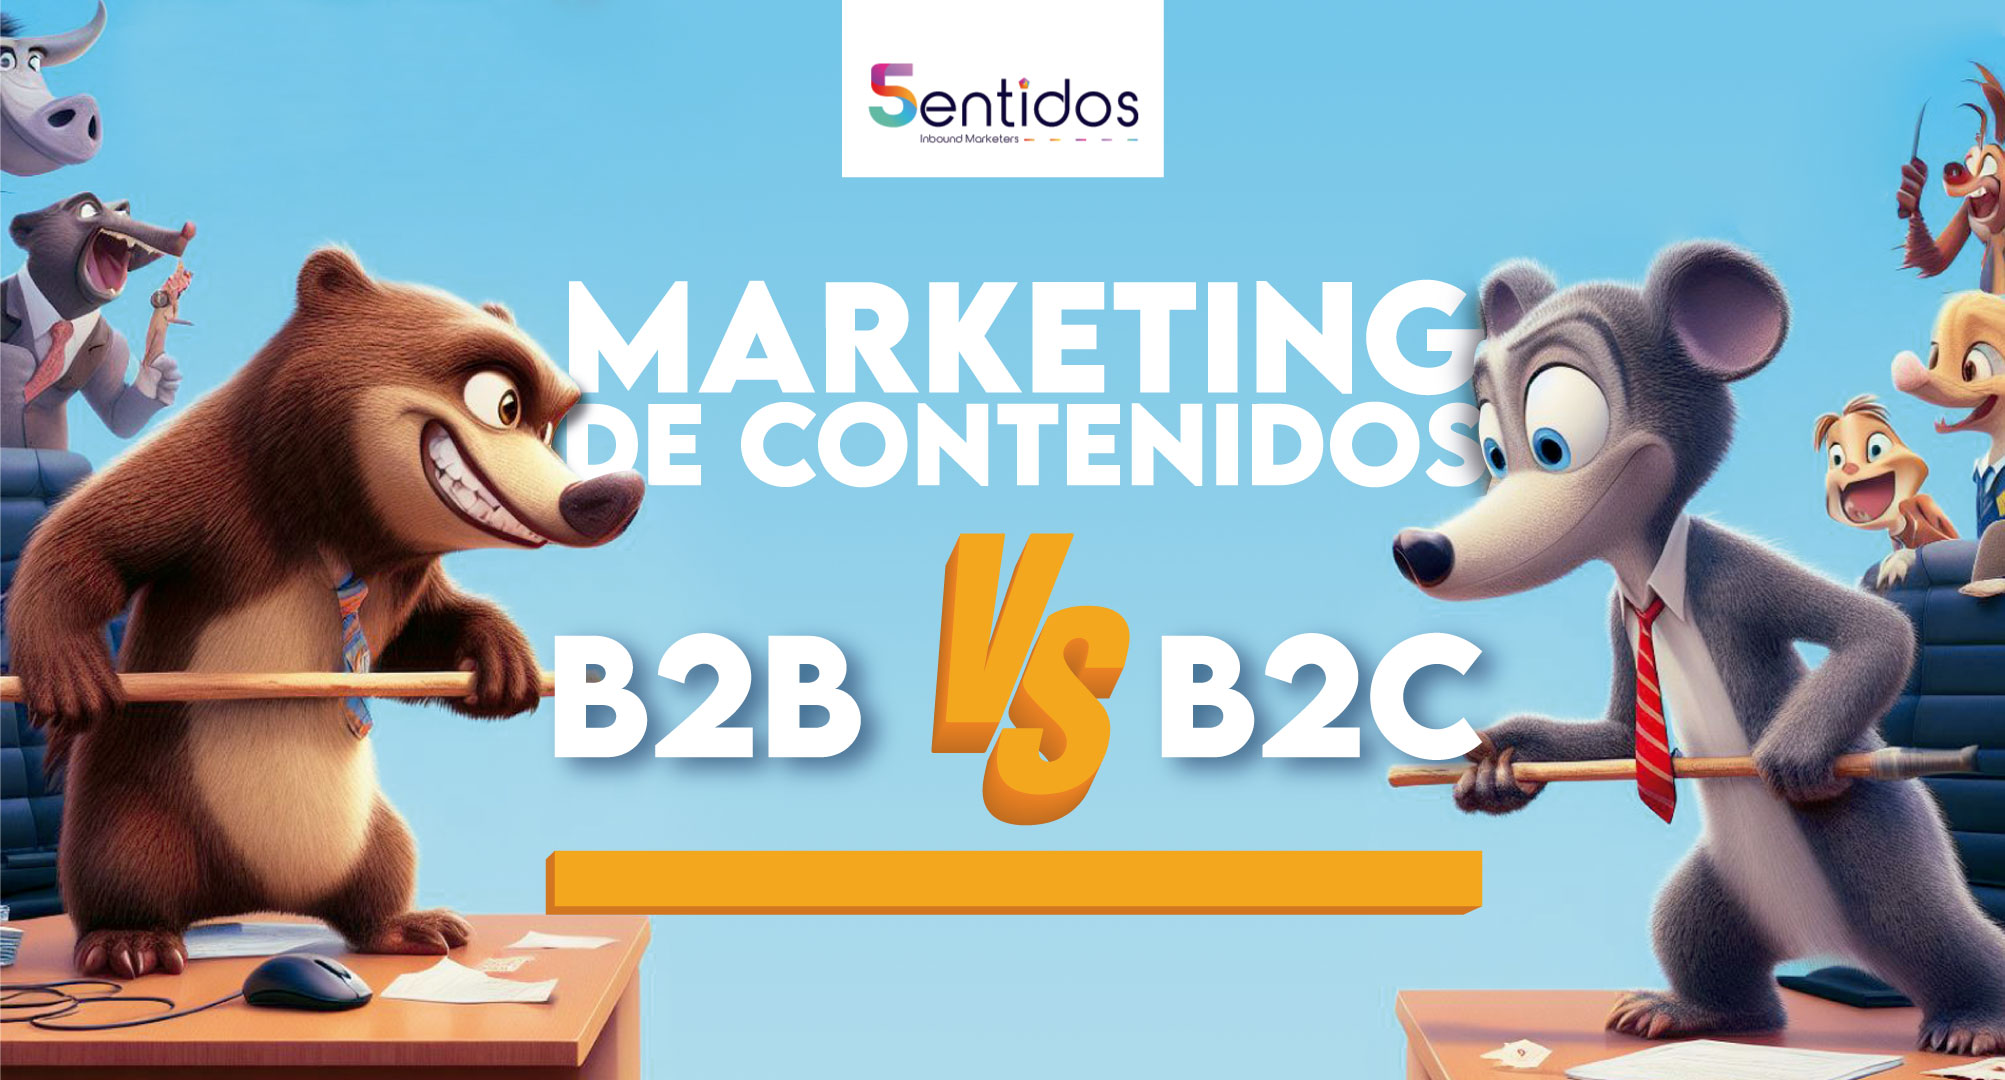 Marketing de contenidos B2B vs. B2C Diferencias clave